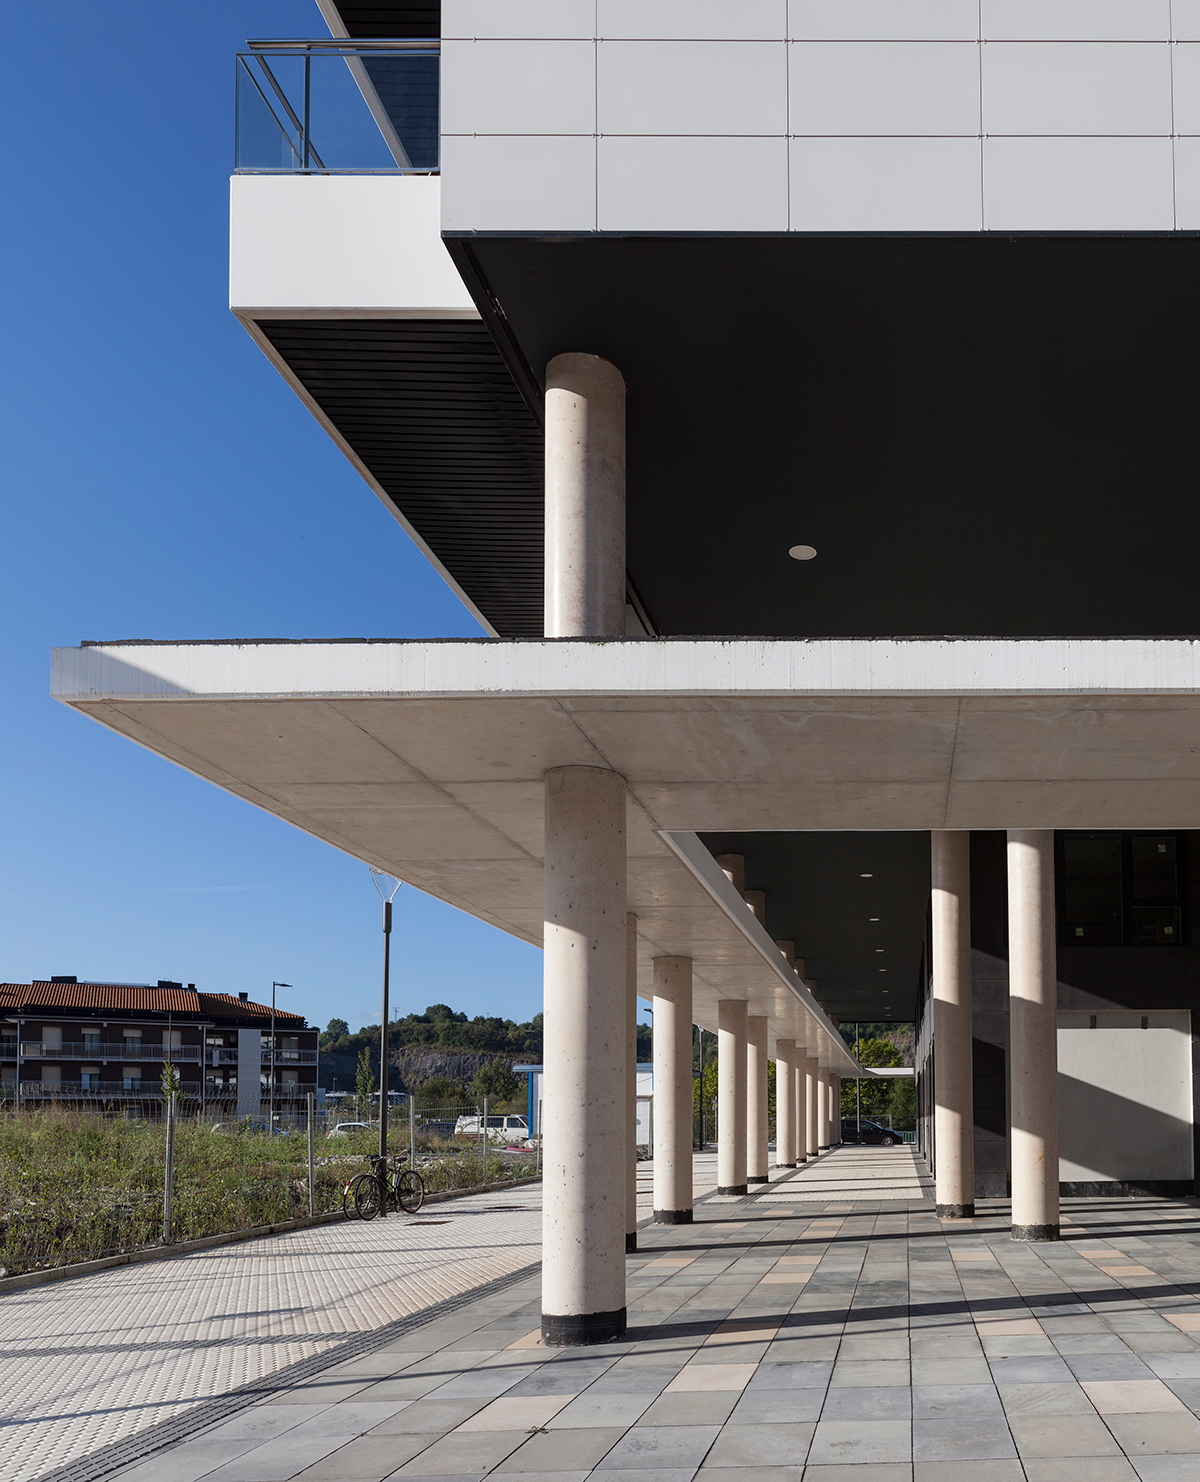 Viviendas en Donostia- San Sebastián; Bieme arquitectura 2020.